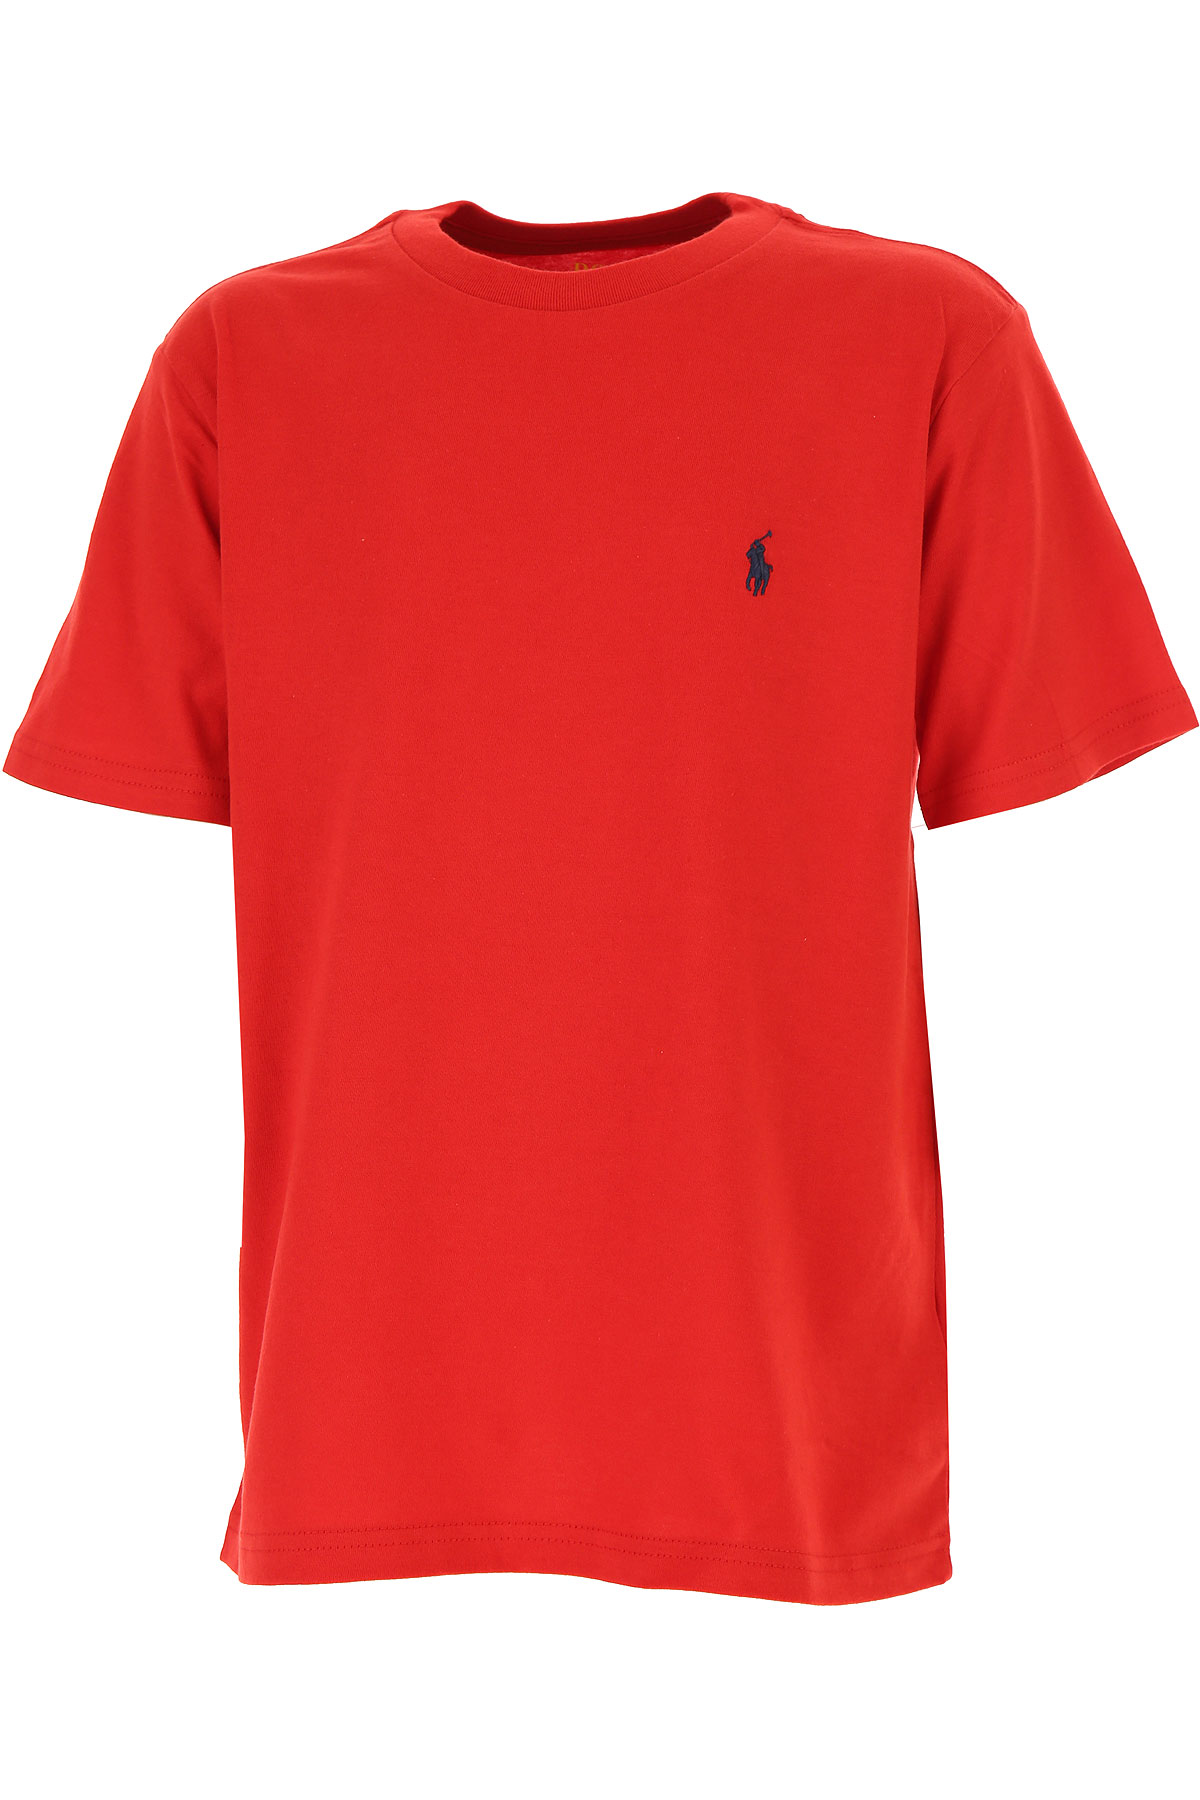 Ralph Lauren Kinder T-Shirt für Jungen, Rot, Baumwolle, 2017, M XL